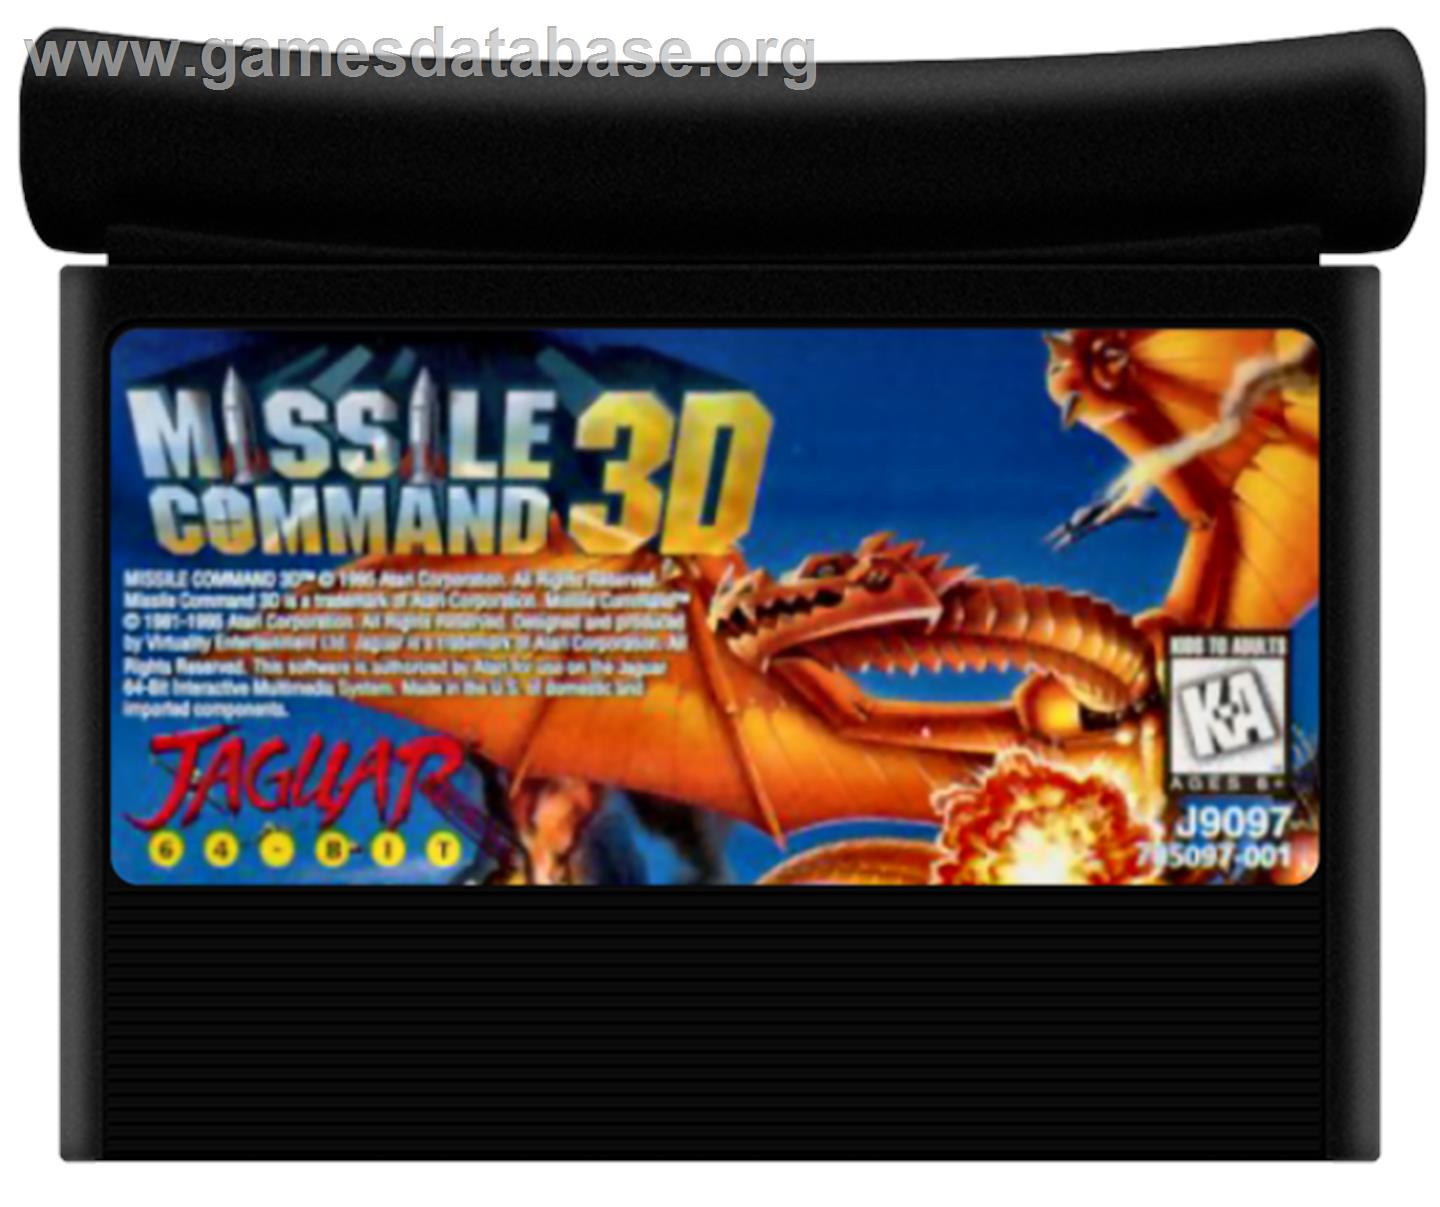 Missile Command 3D - Atari Jaguar - Artwork - Cartridge